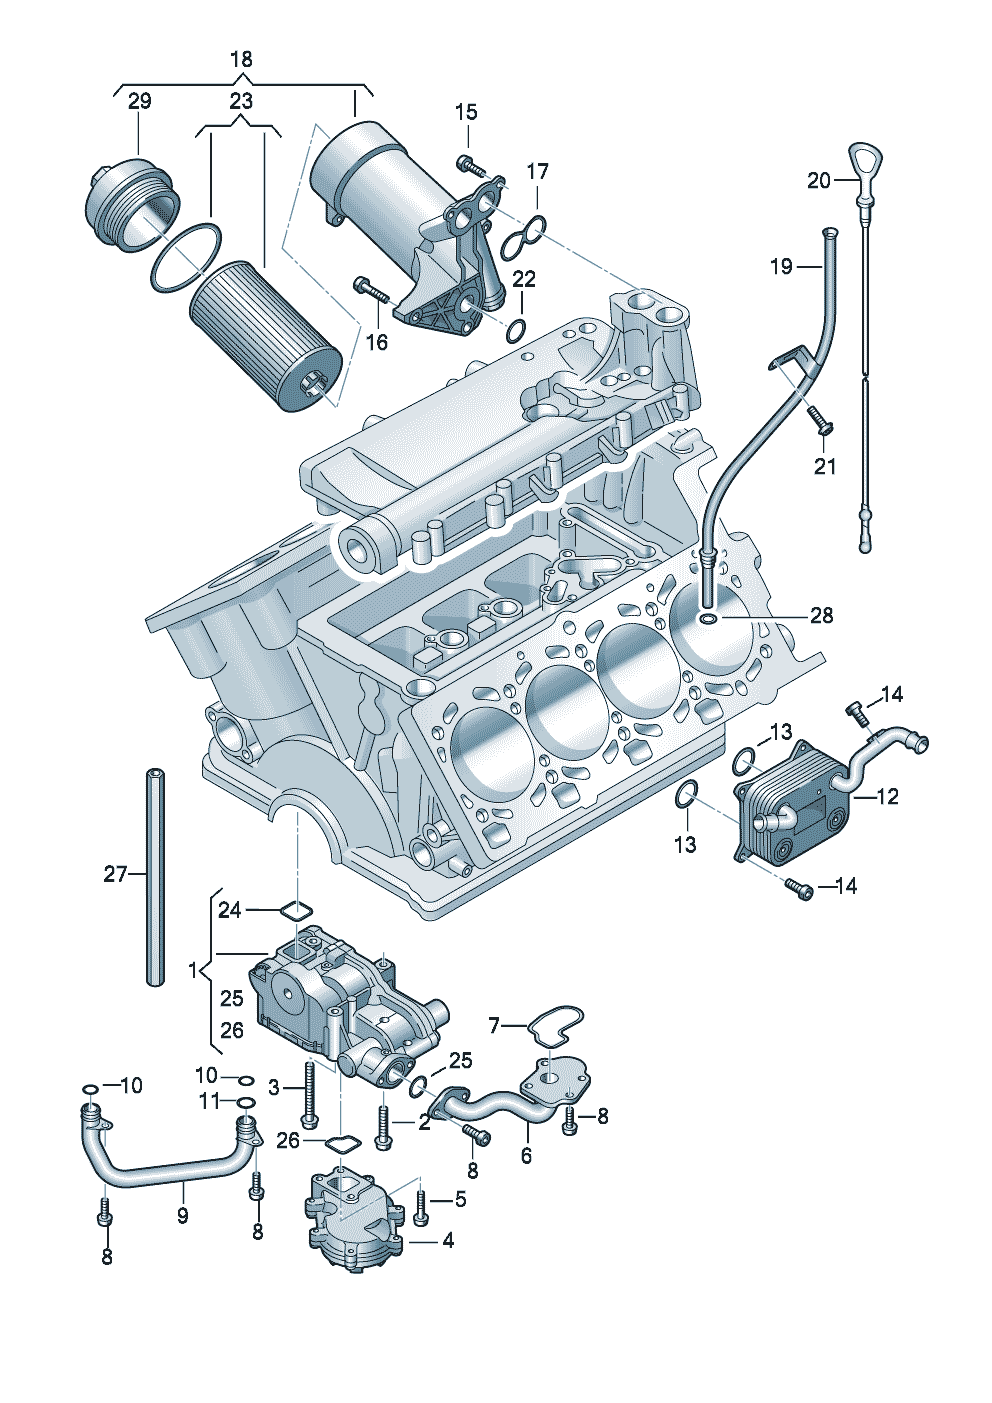 pompa oliofiltro olioSupporto filtro olioAsta di misurazione olioradiatore olio 4,2l - Audi A4/Avant - a4